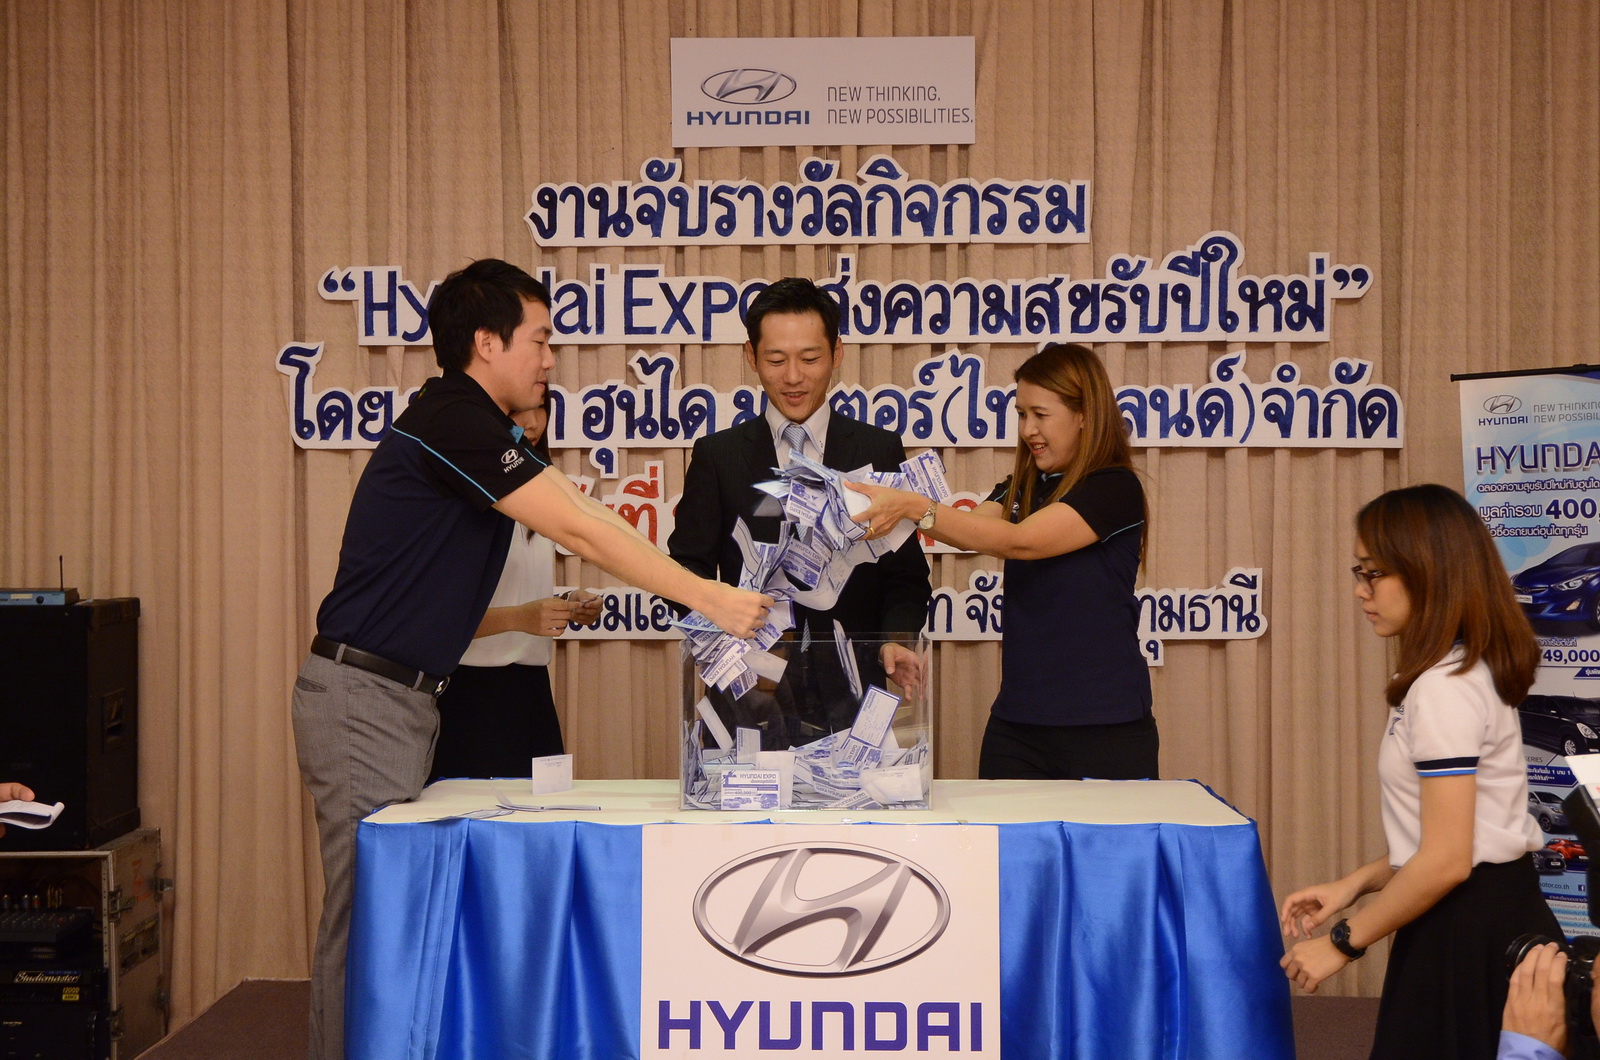 ฮุนไดจับรางวัลมอบโชคใหญ่ จากแคมเปญ “Hyundai Expo ส่งความสุขรับปีใหม่” รวมมูลค่ากว่า 400,000 บาท